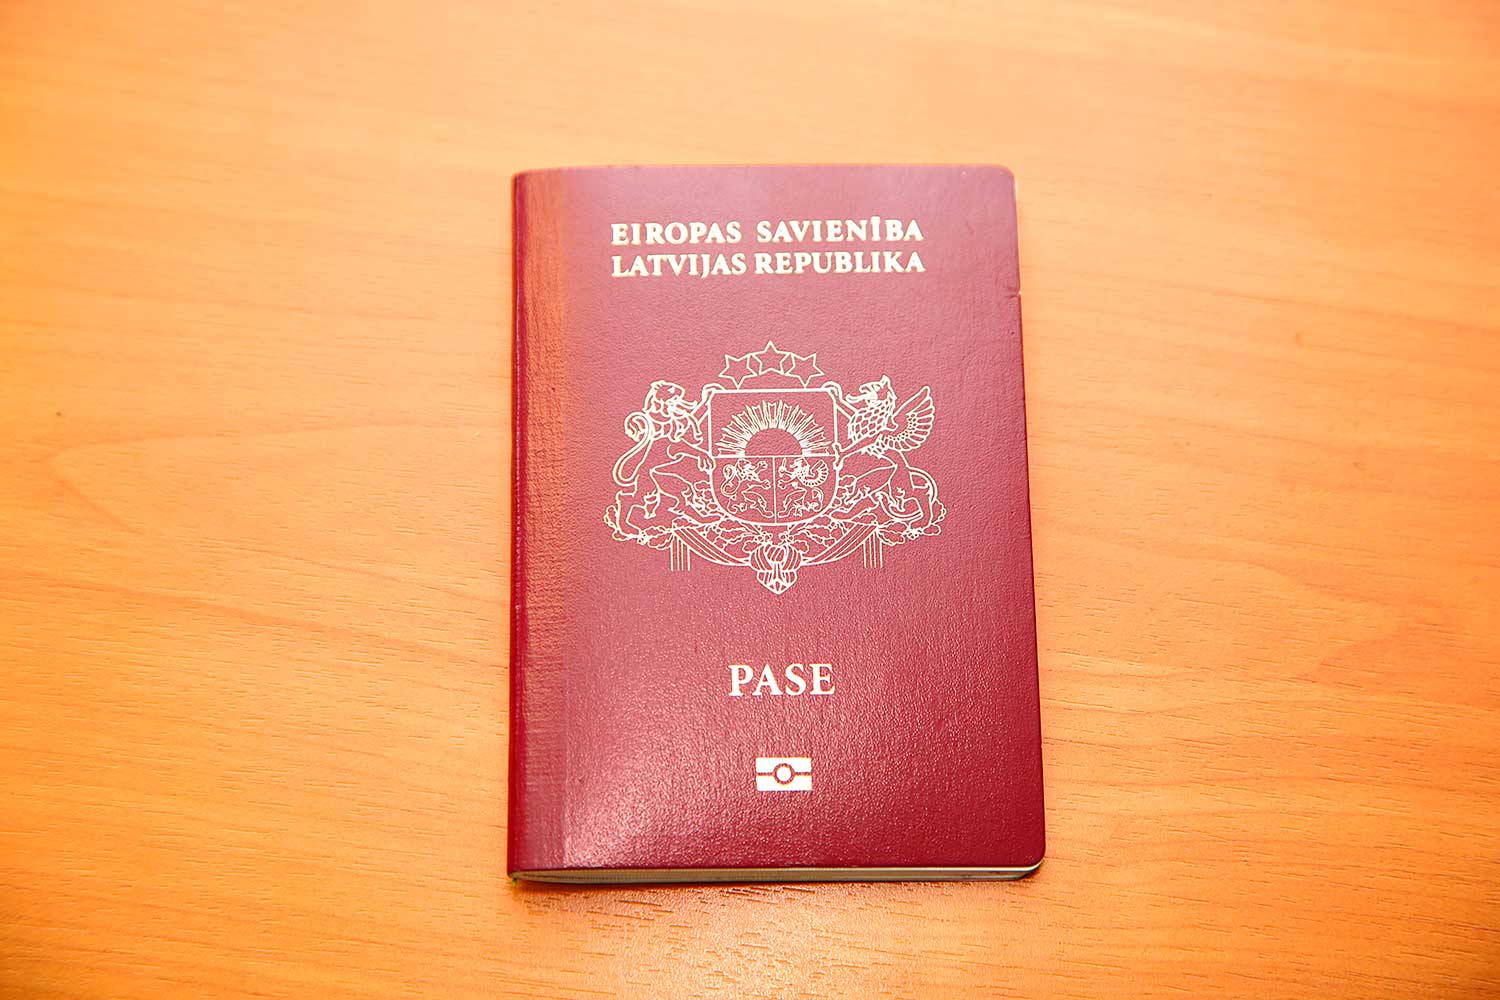 Как стать гражданином латвии россиянину в 2021 году: необходимые документы, сроки и стоимость, преимущества латышского гражданства, способы получения